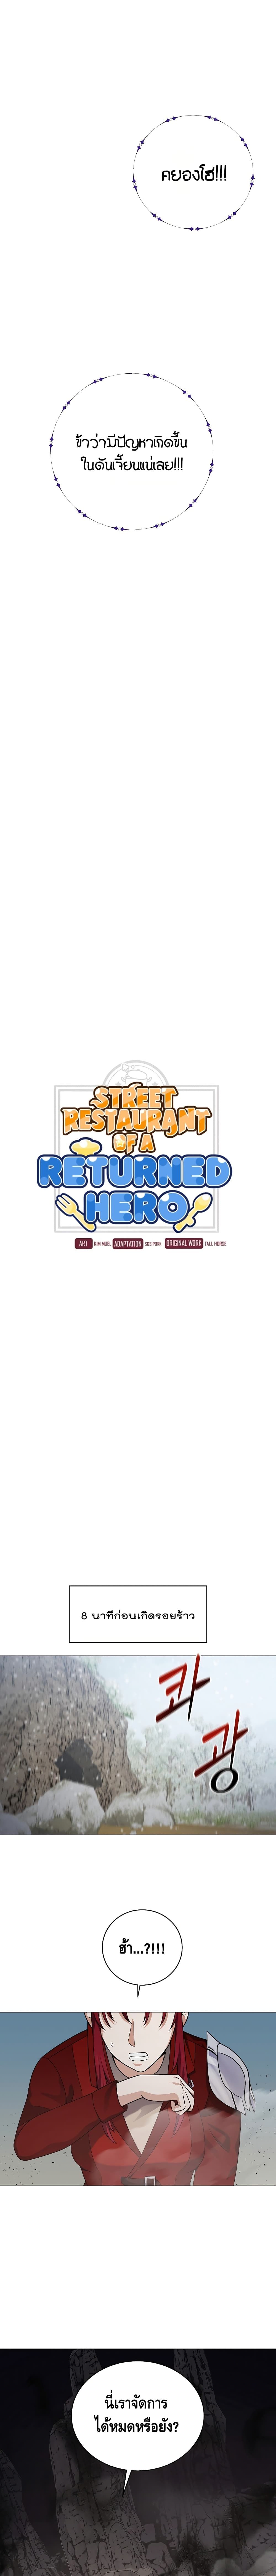 Street Restaurant of a Returned Hero 23 02